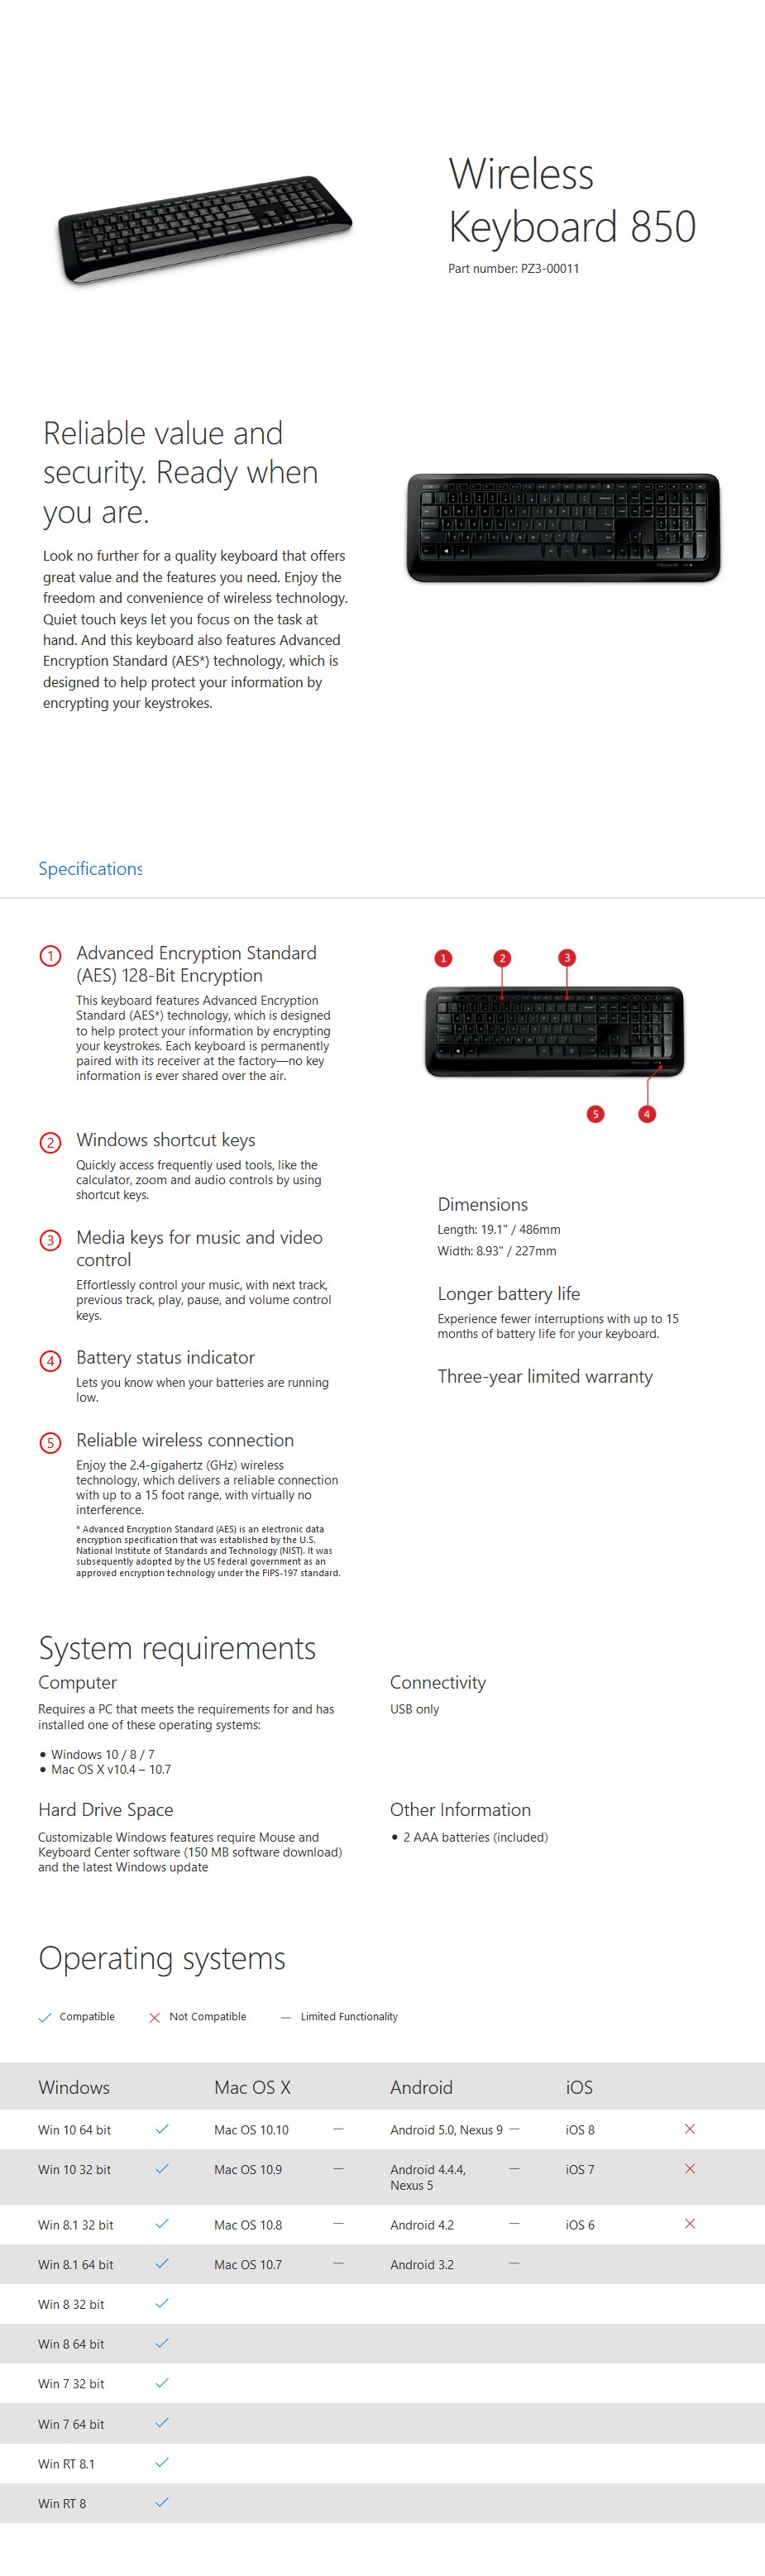 Microsoft Wireless Keyboard 850 - Black - Desktop Overview 1